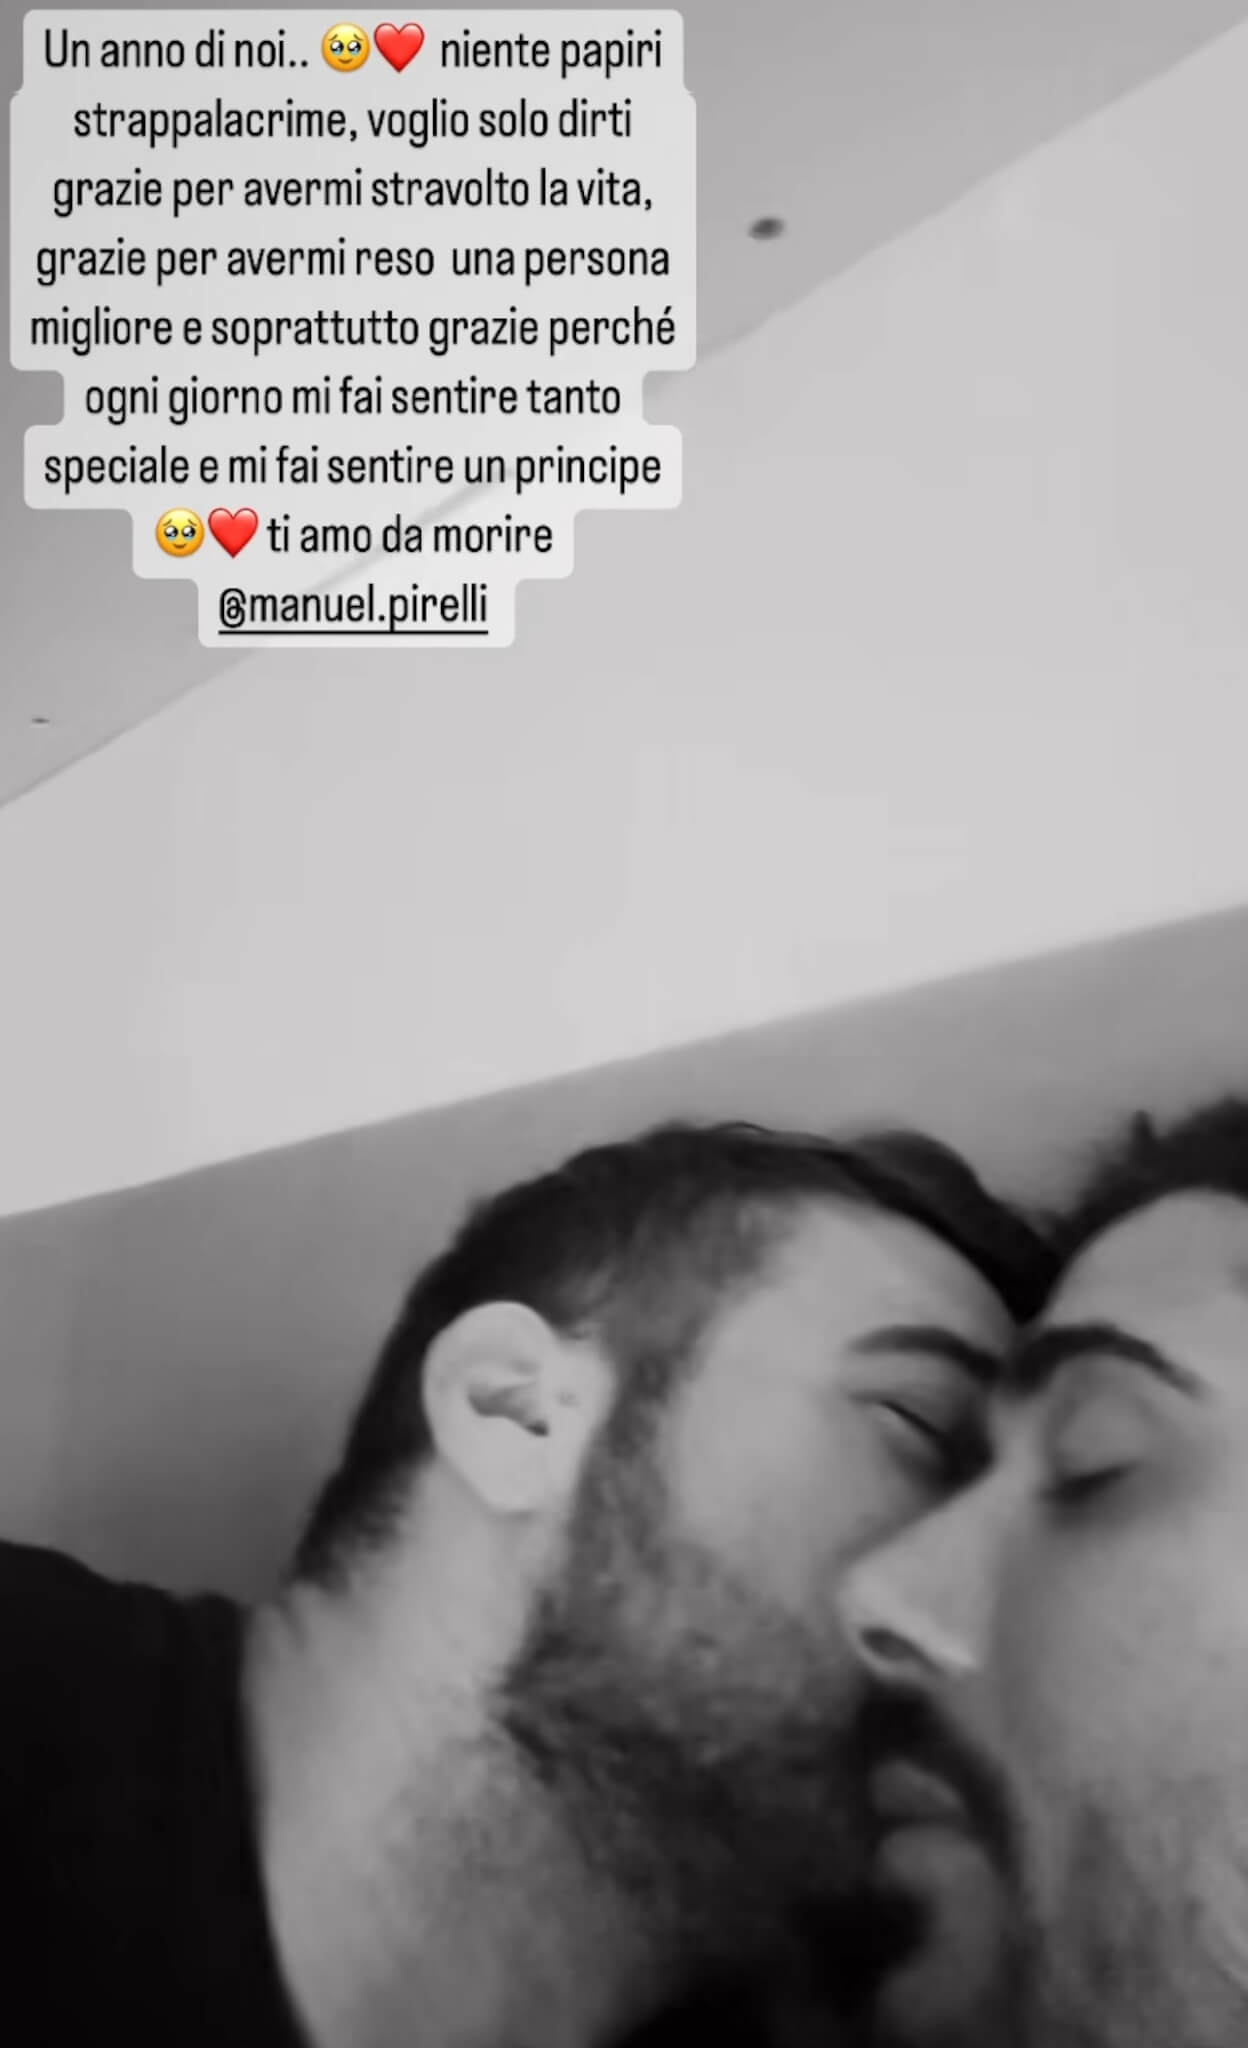 Alex Migliorini e Manuel Pirelli festeggiano il primo anniversario d'amore: "Un anno di noi, per sempre" - Alex Migliorini e Manuel Pirelli 3 - Gay.it